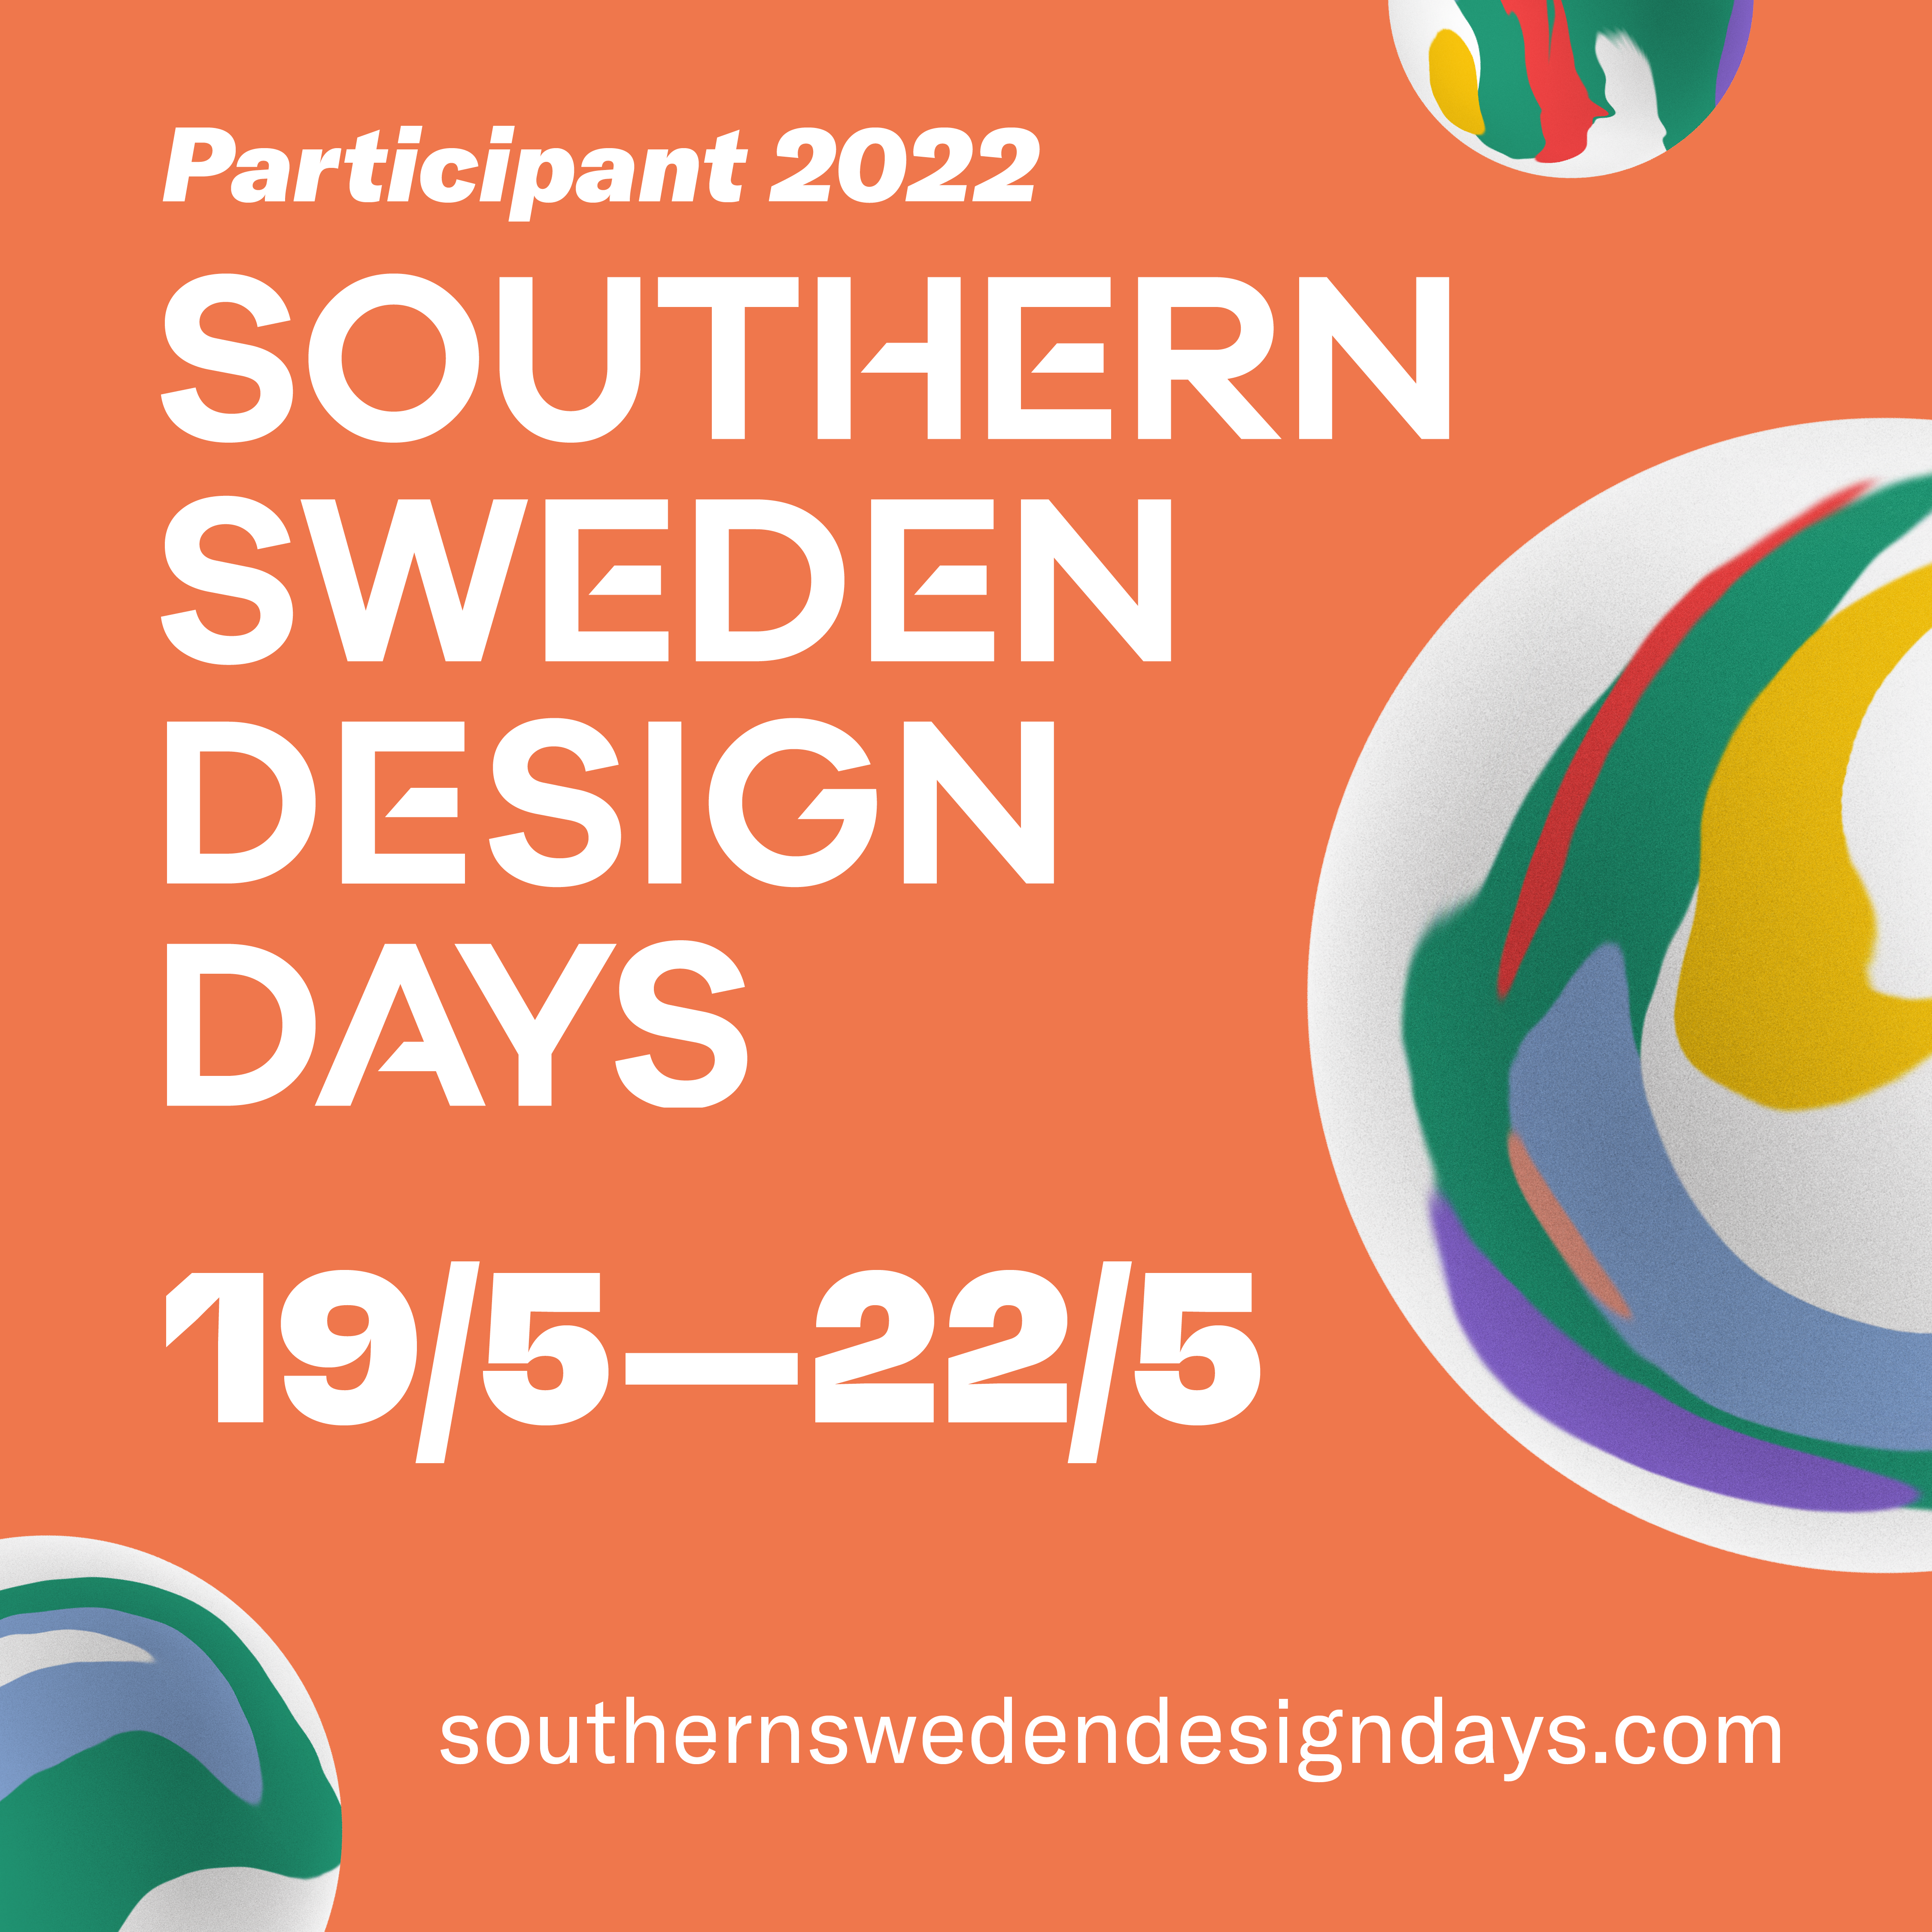 ssdd-participant-2022-square-4